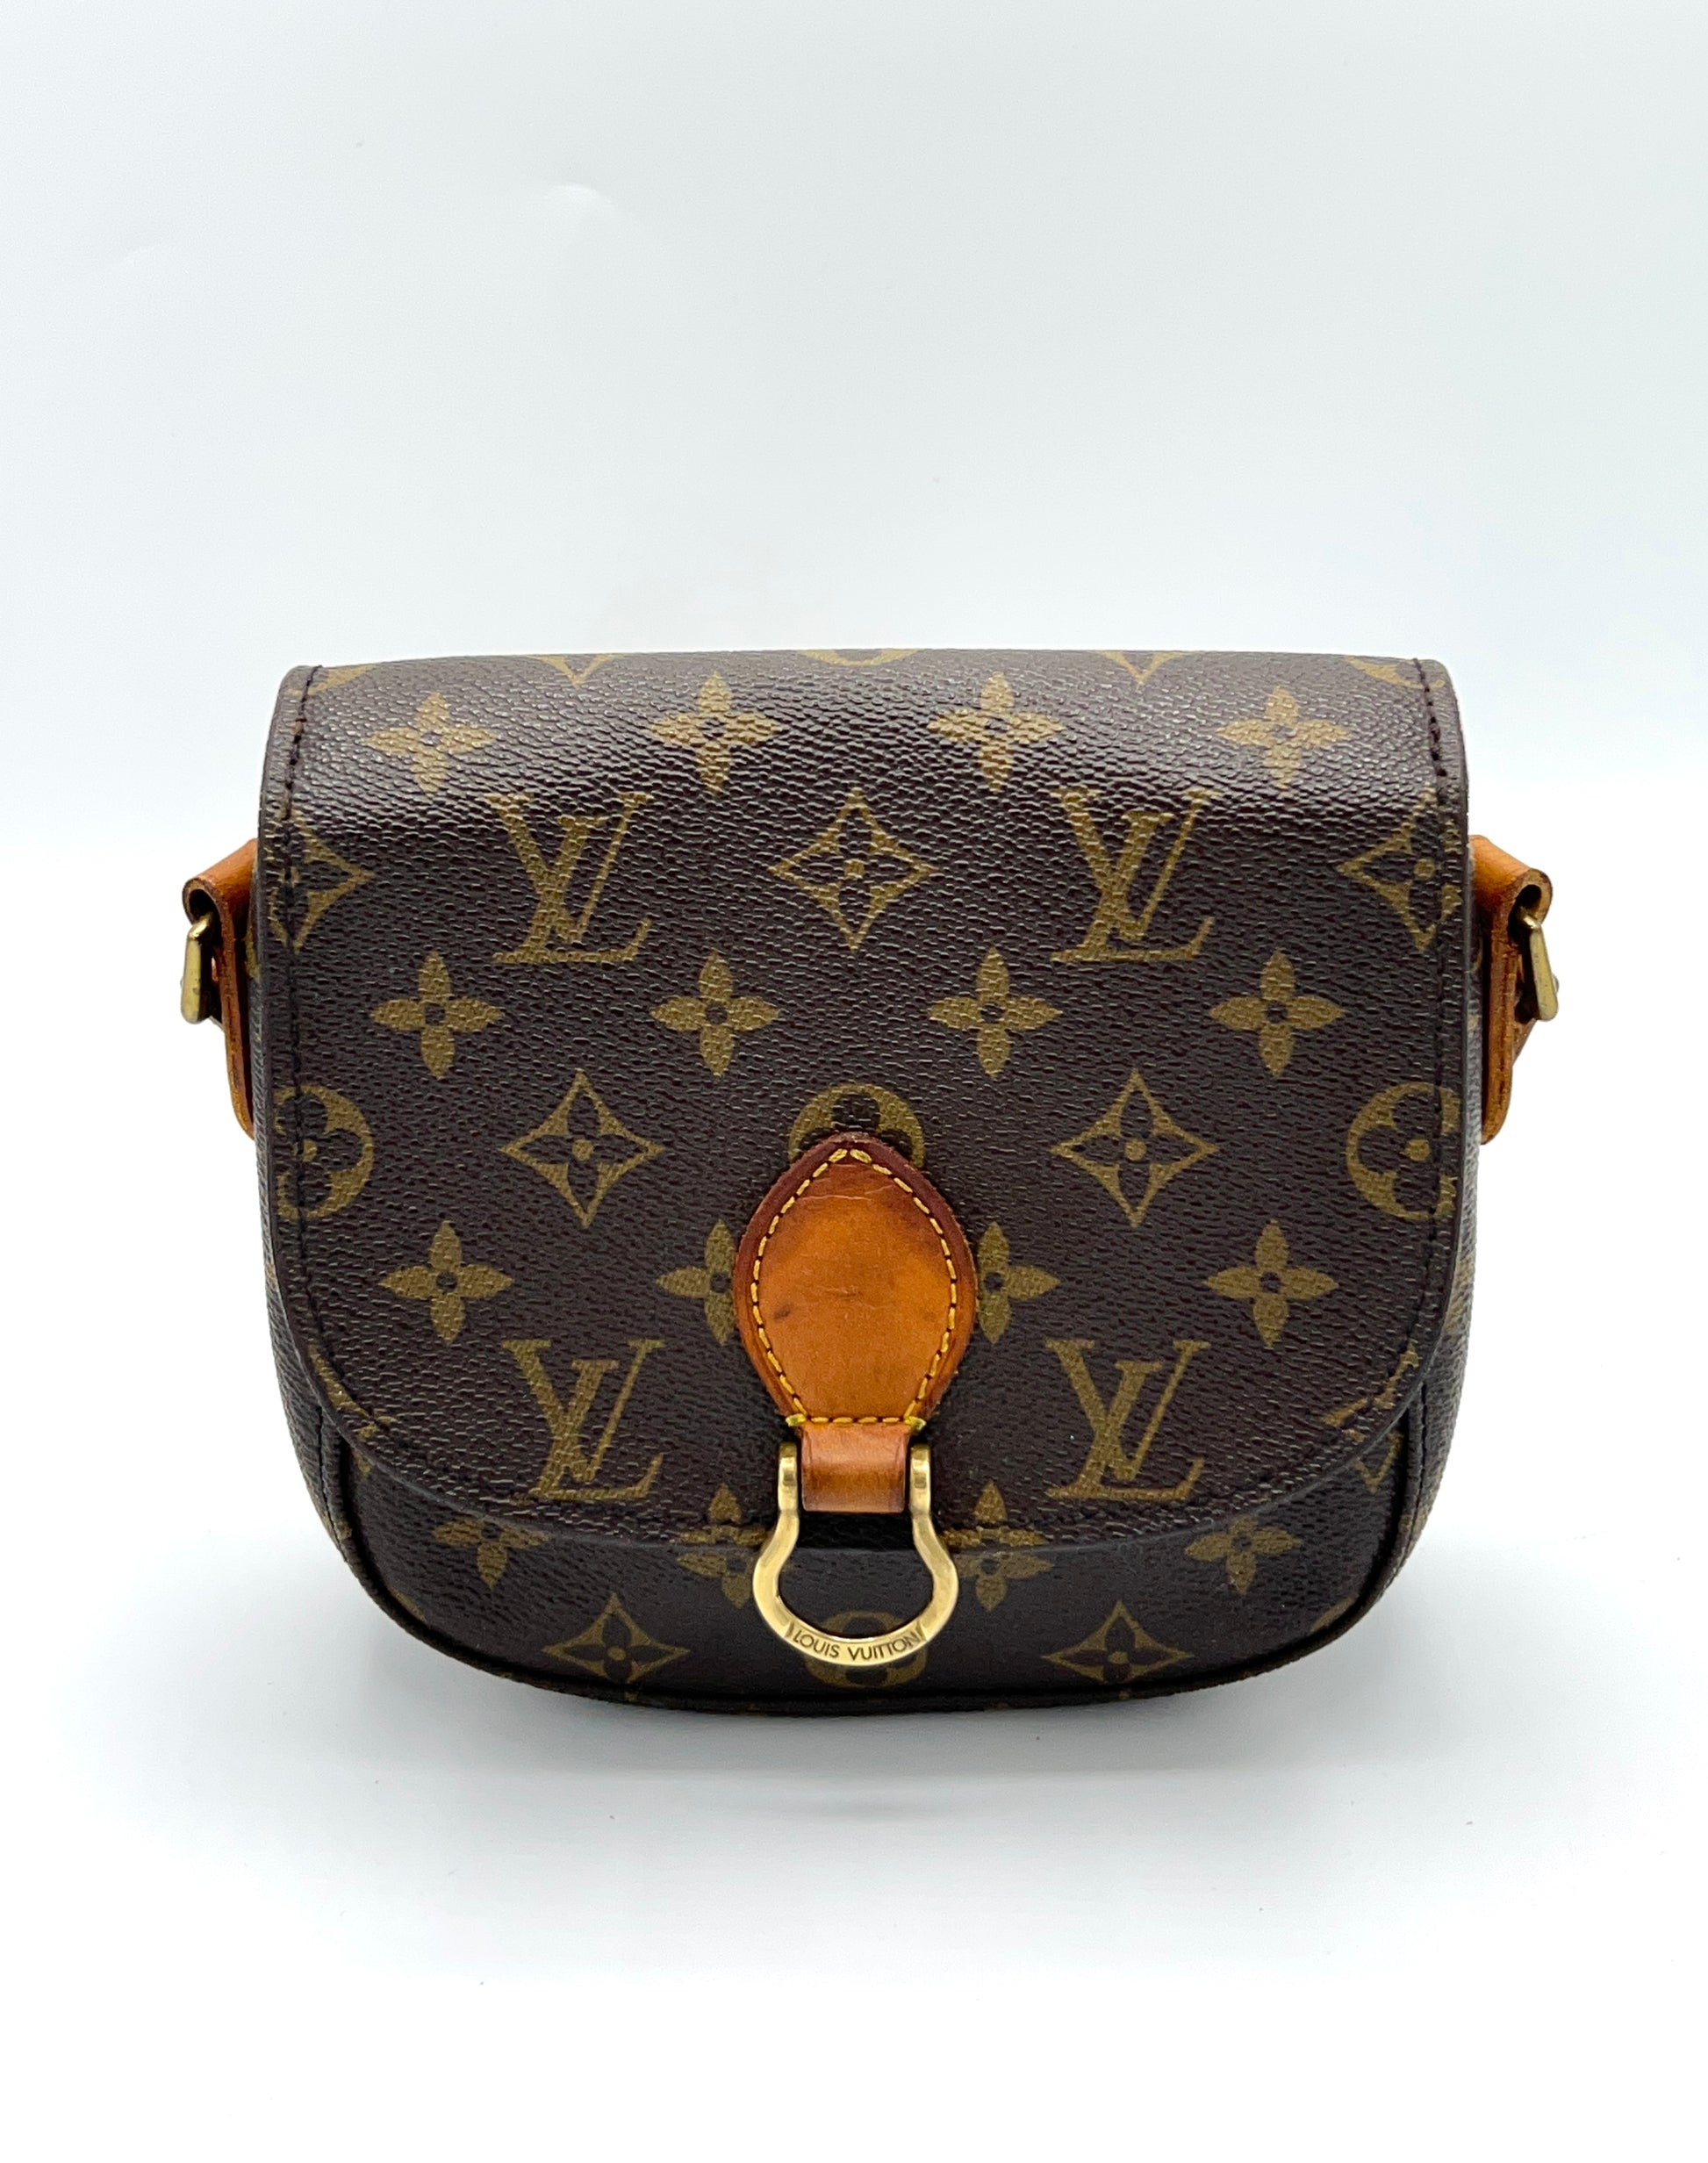 A Louis Vuitton Classic: Saint Cloud